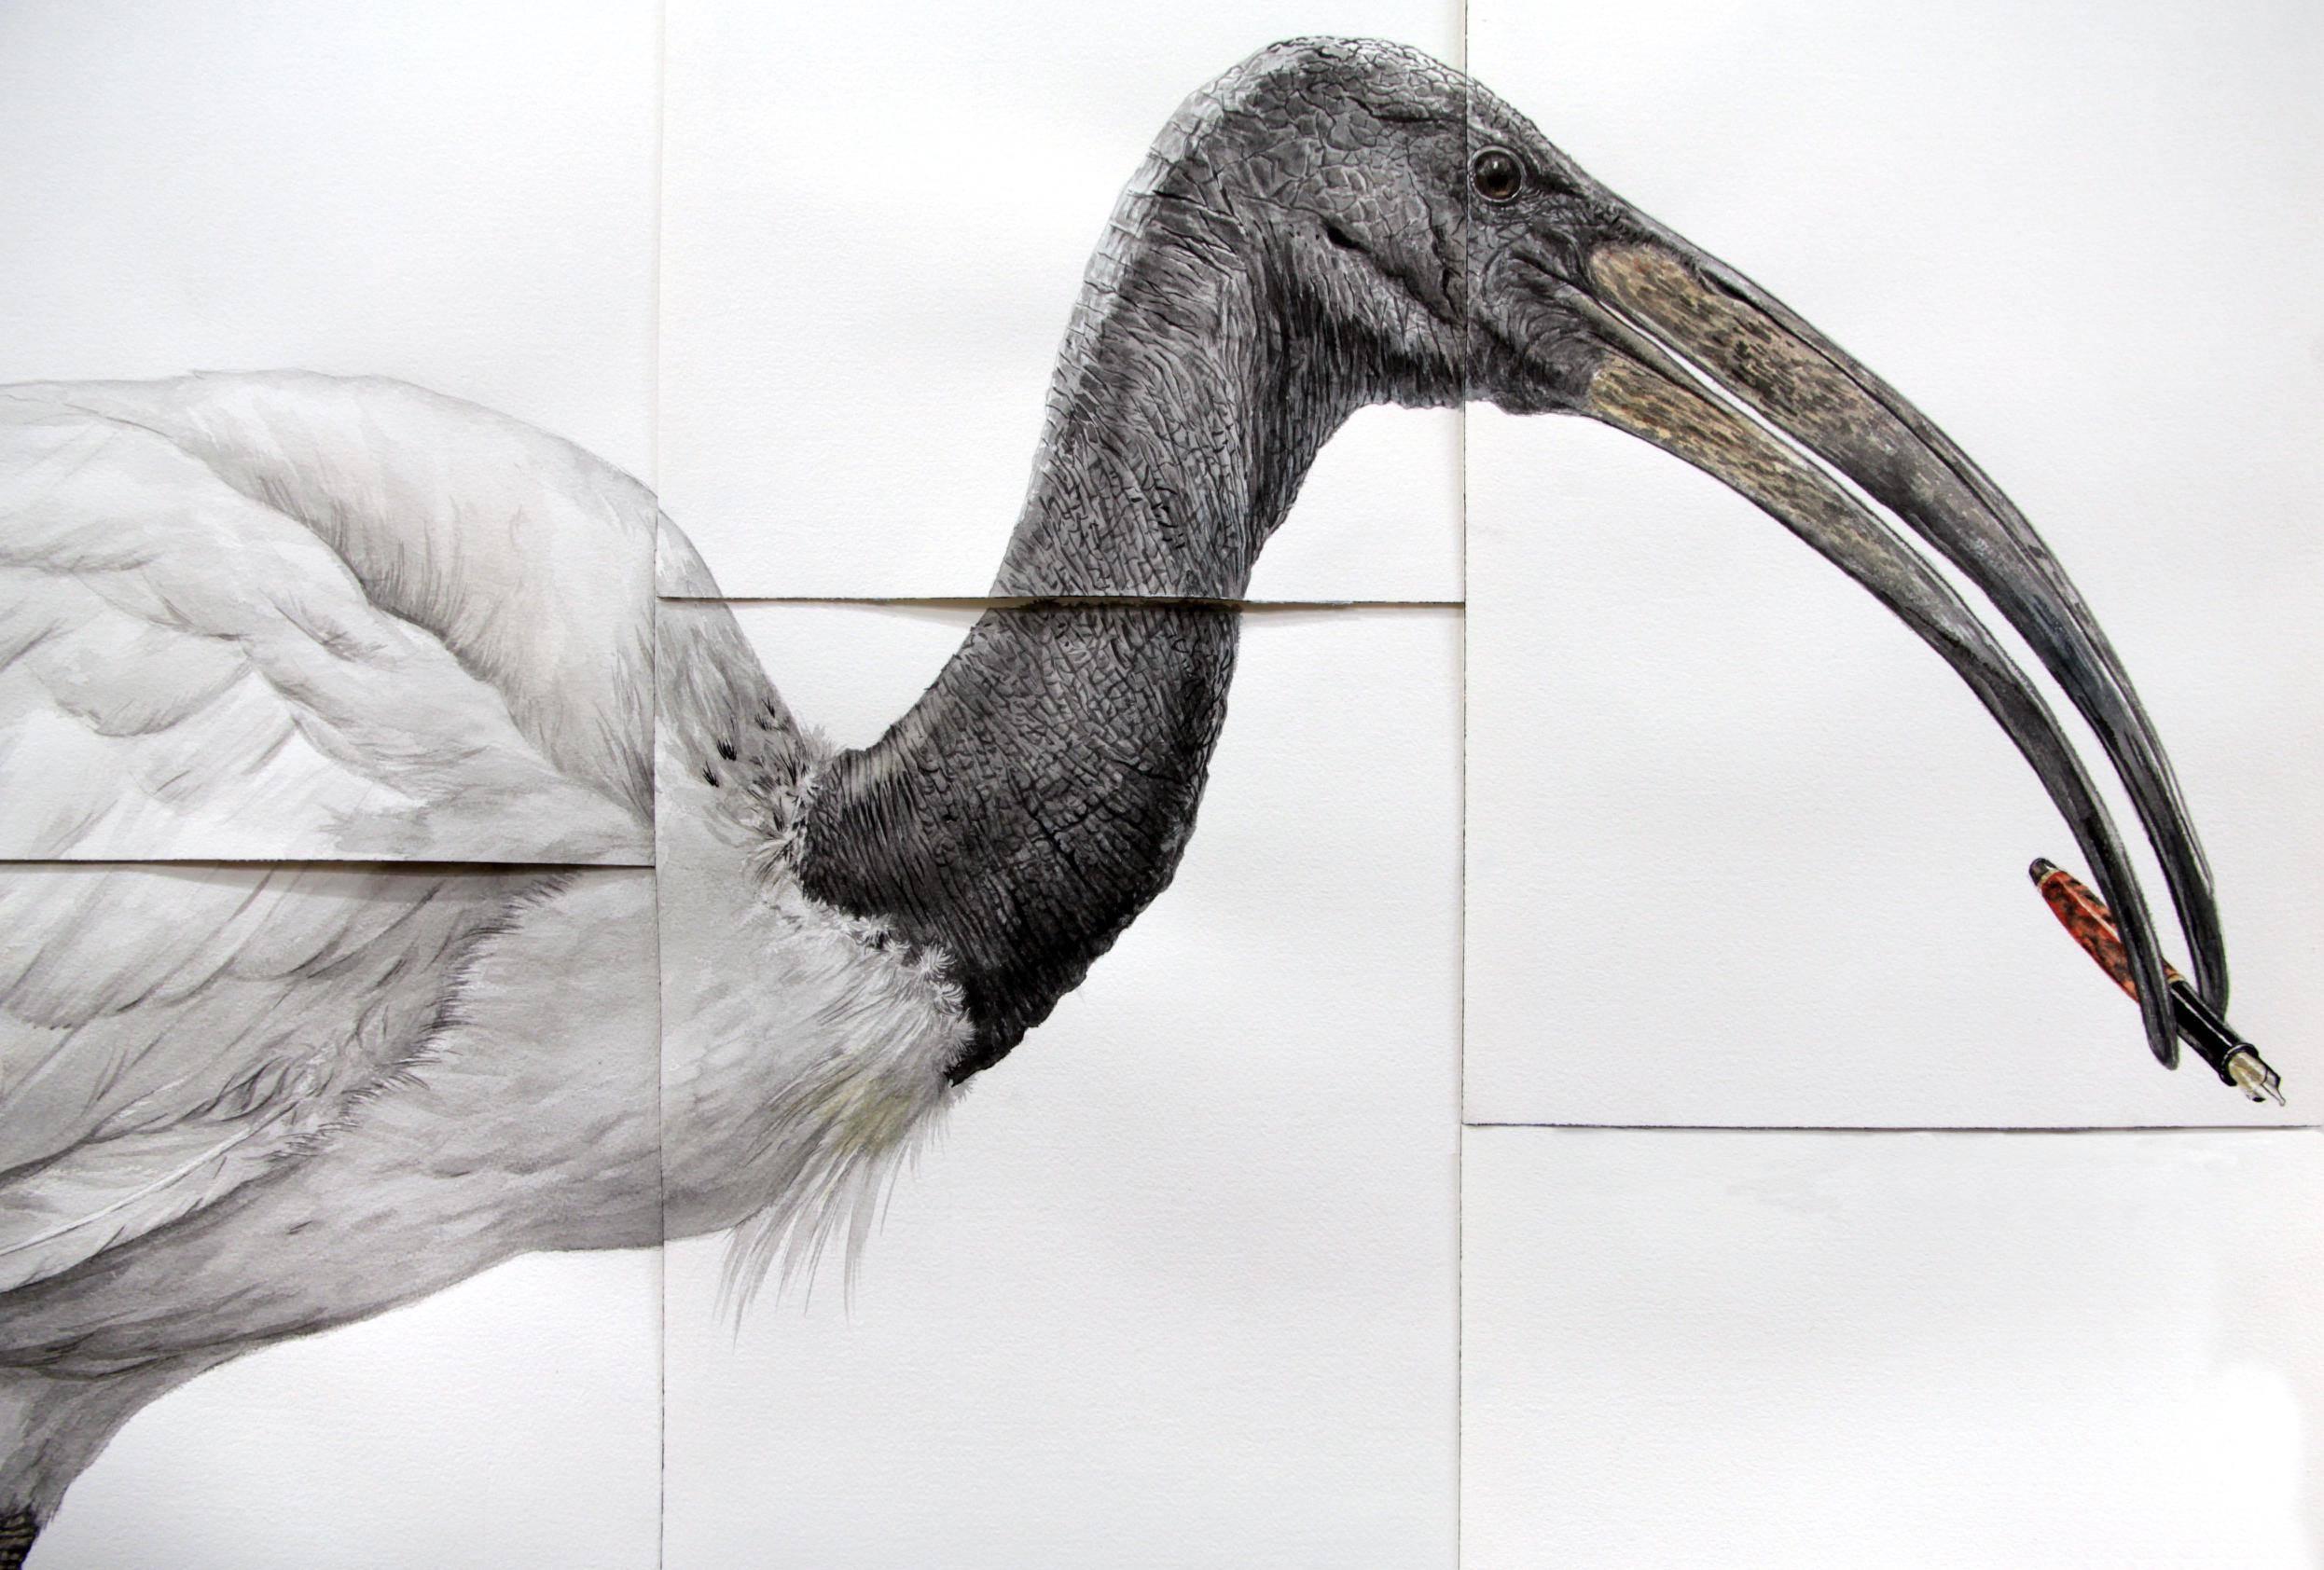 Zeitgenössisches surrealistisches Gemälde „Sacred“ (Ibis-Wasservogel mit Federstift)  – Art von Thomas Broadbent